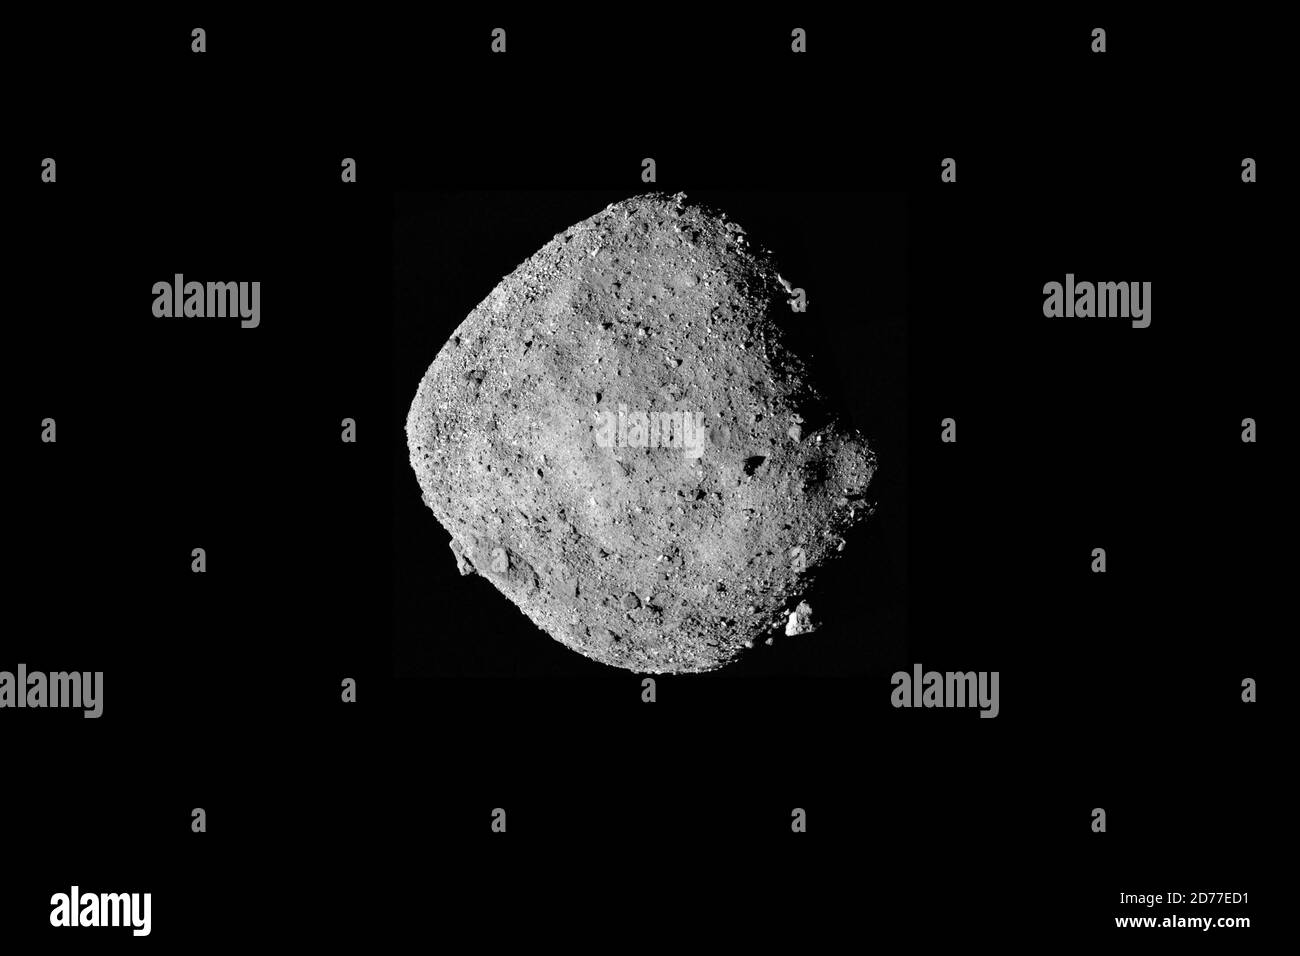 ASTEROIDE BENNU - 02 dicembre 2018 - è disponibile UN'immagine a mosaico dell'asteroide Bennu, composta da 12 immagini PolyCam raccolte il 2 dicembre dall'OSIRIDE-Rex Foto Stock